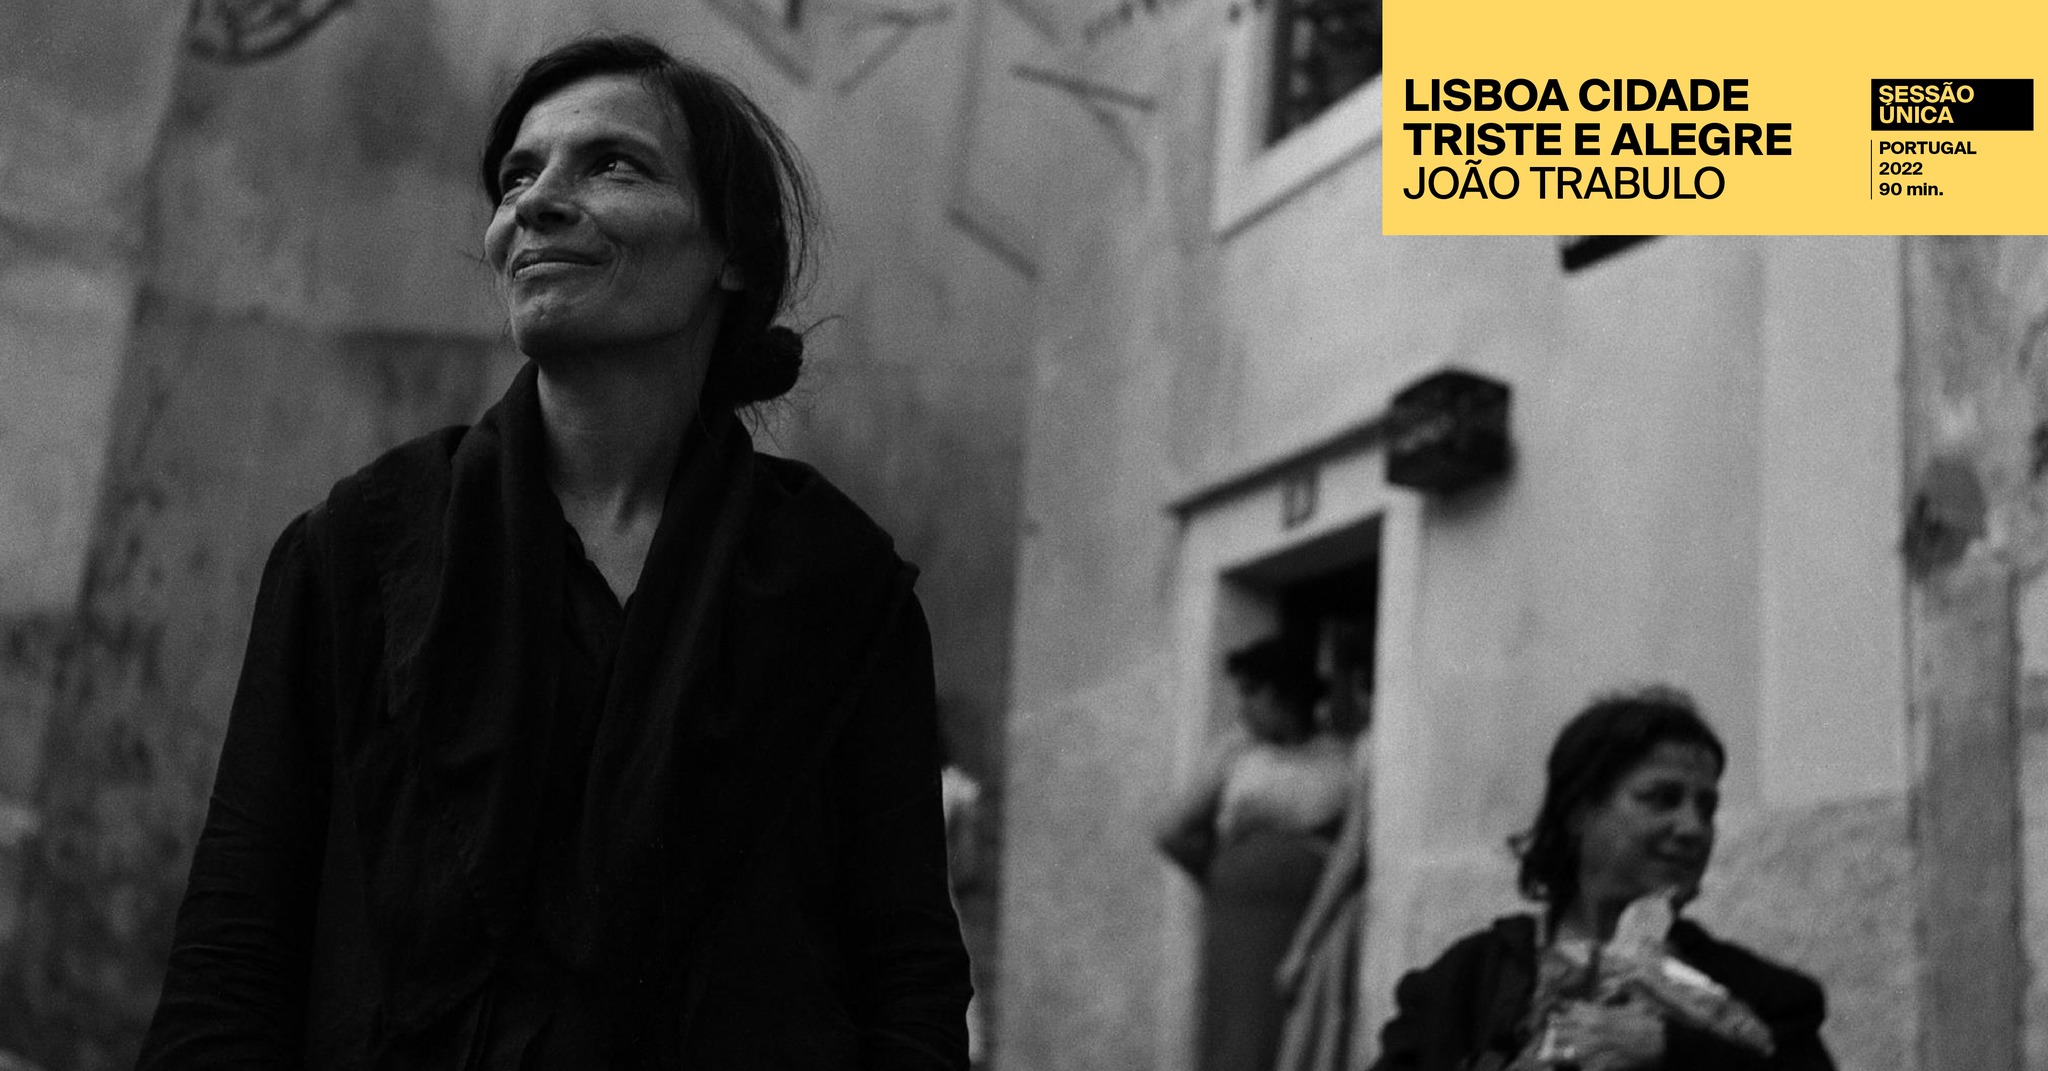 Lisboa Cidade Triste e Alegre - Sessão Única com o realizador João Trabulo - Cinema Trindade